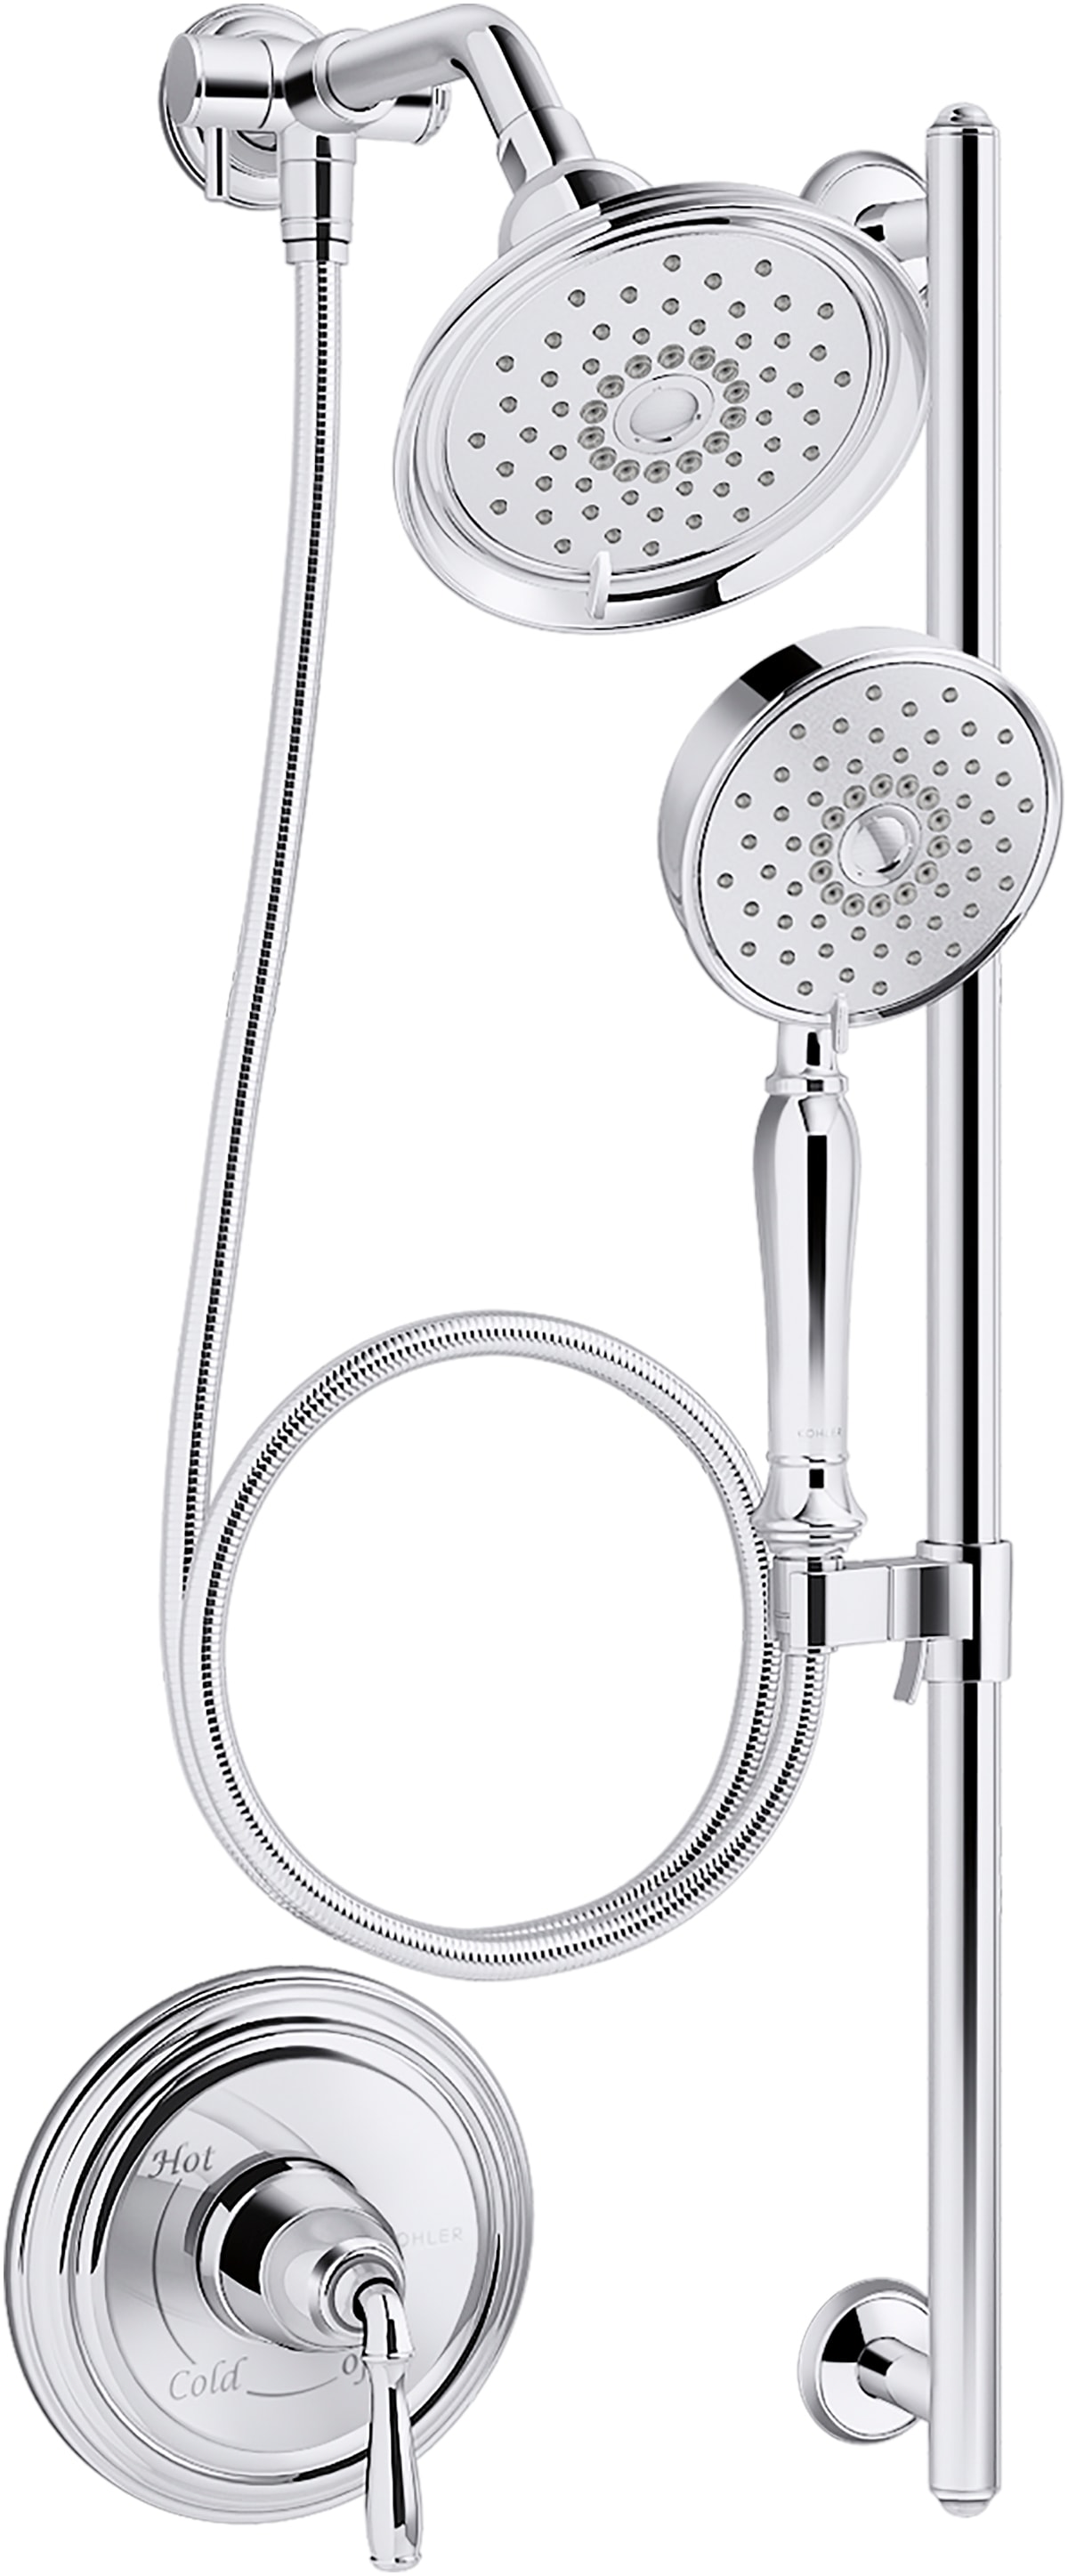 KOHLER Bancroft Polished Chrome Shower Faucet Bar System with 2-way Diverter